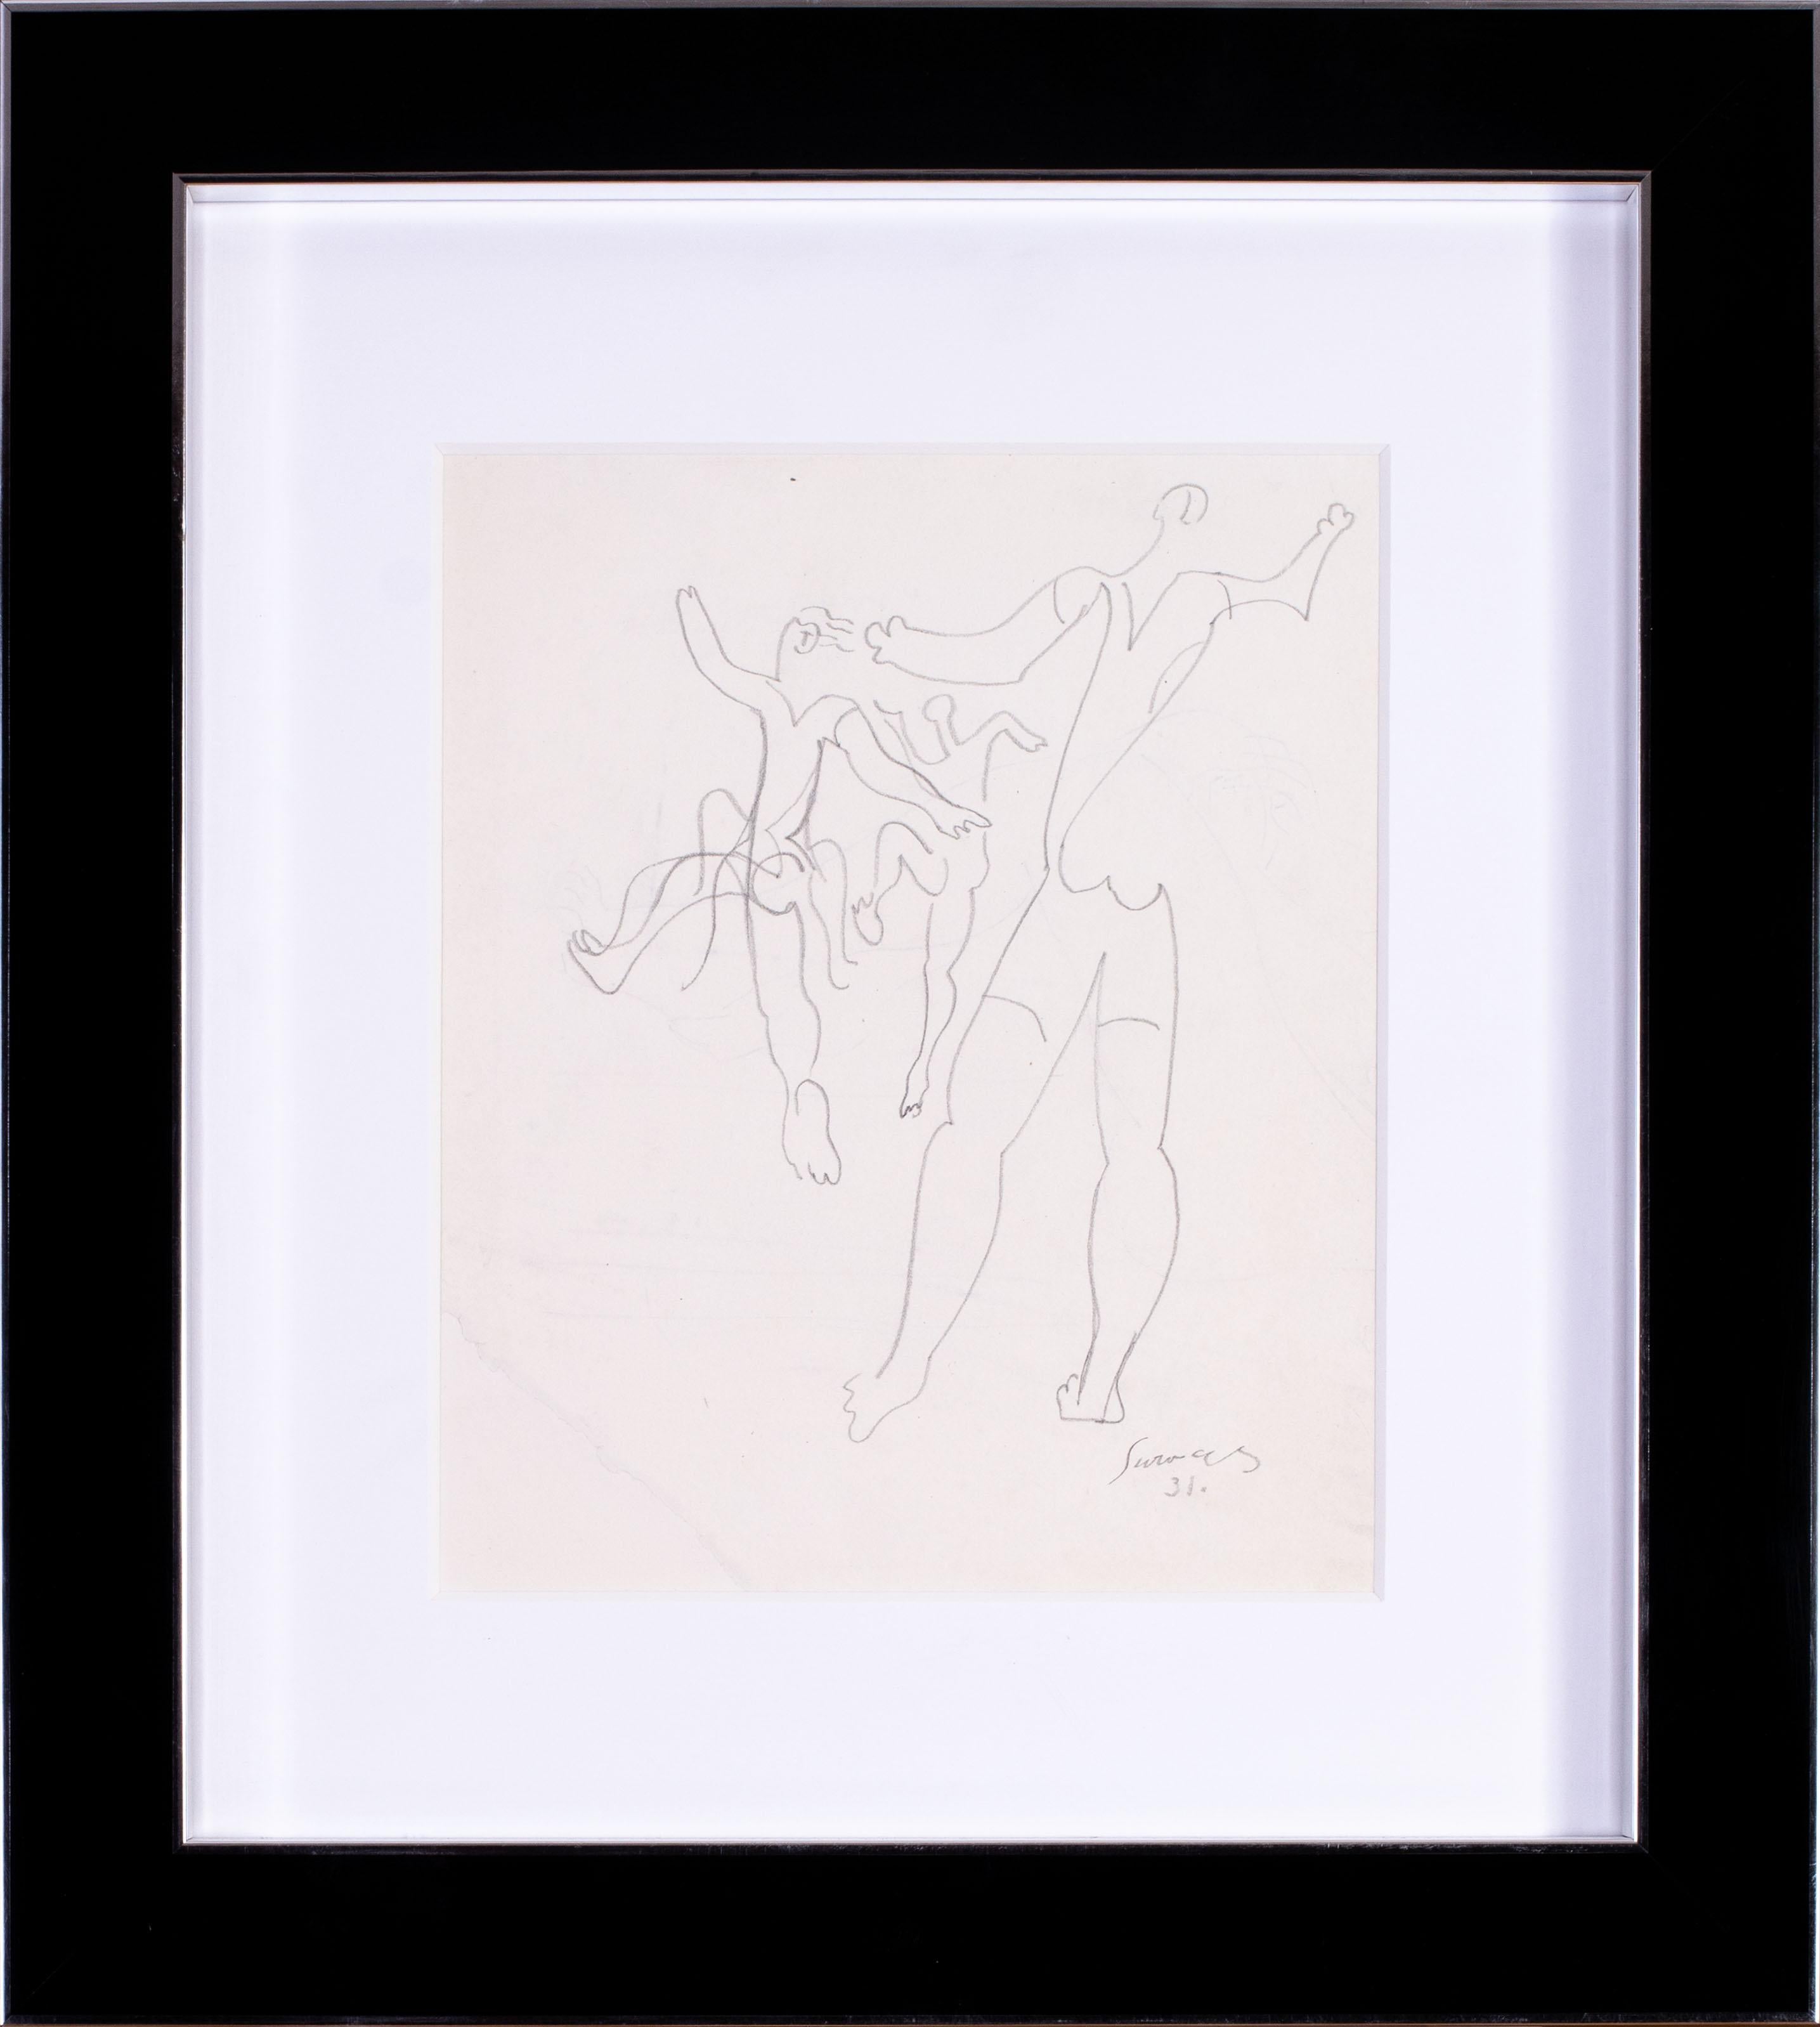 Figurative Art Leopold Survage  - Le dessin français de 1931 de l'artiste cubiste Leopold Survage, représentant des danseurs